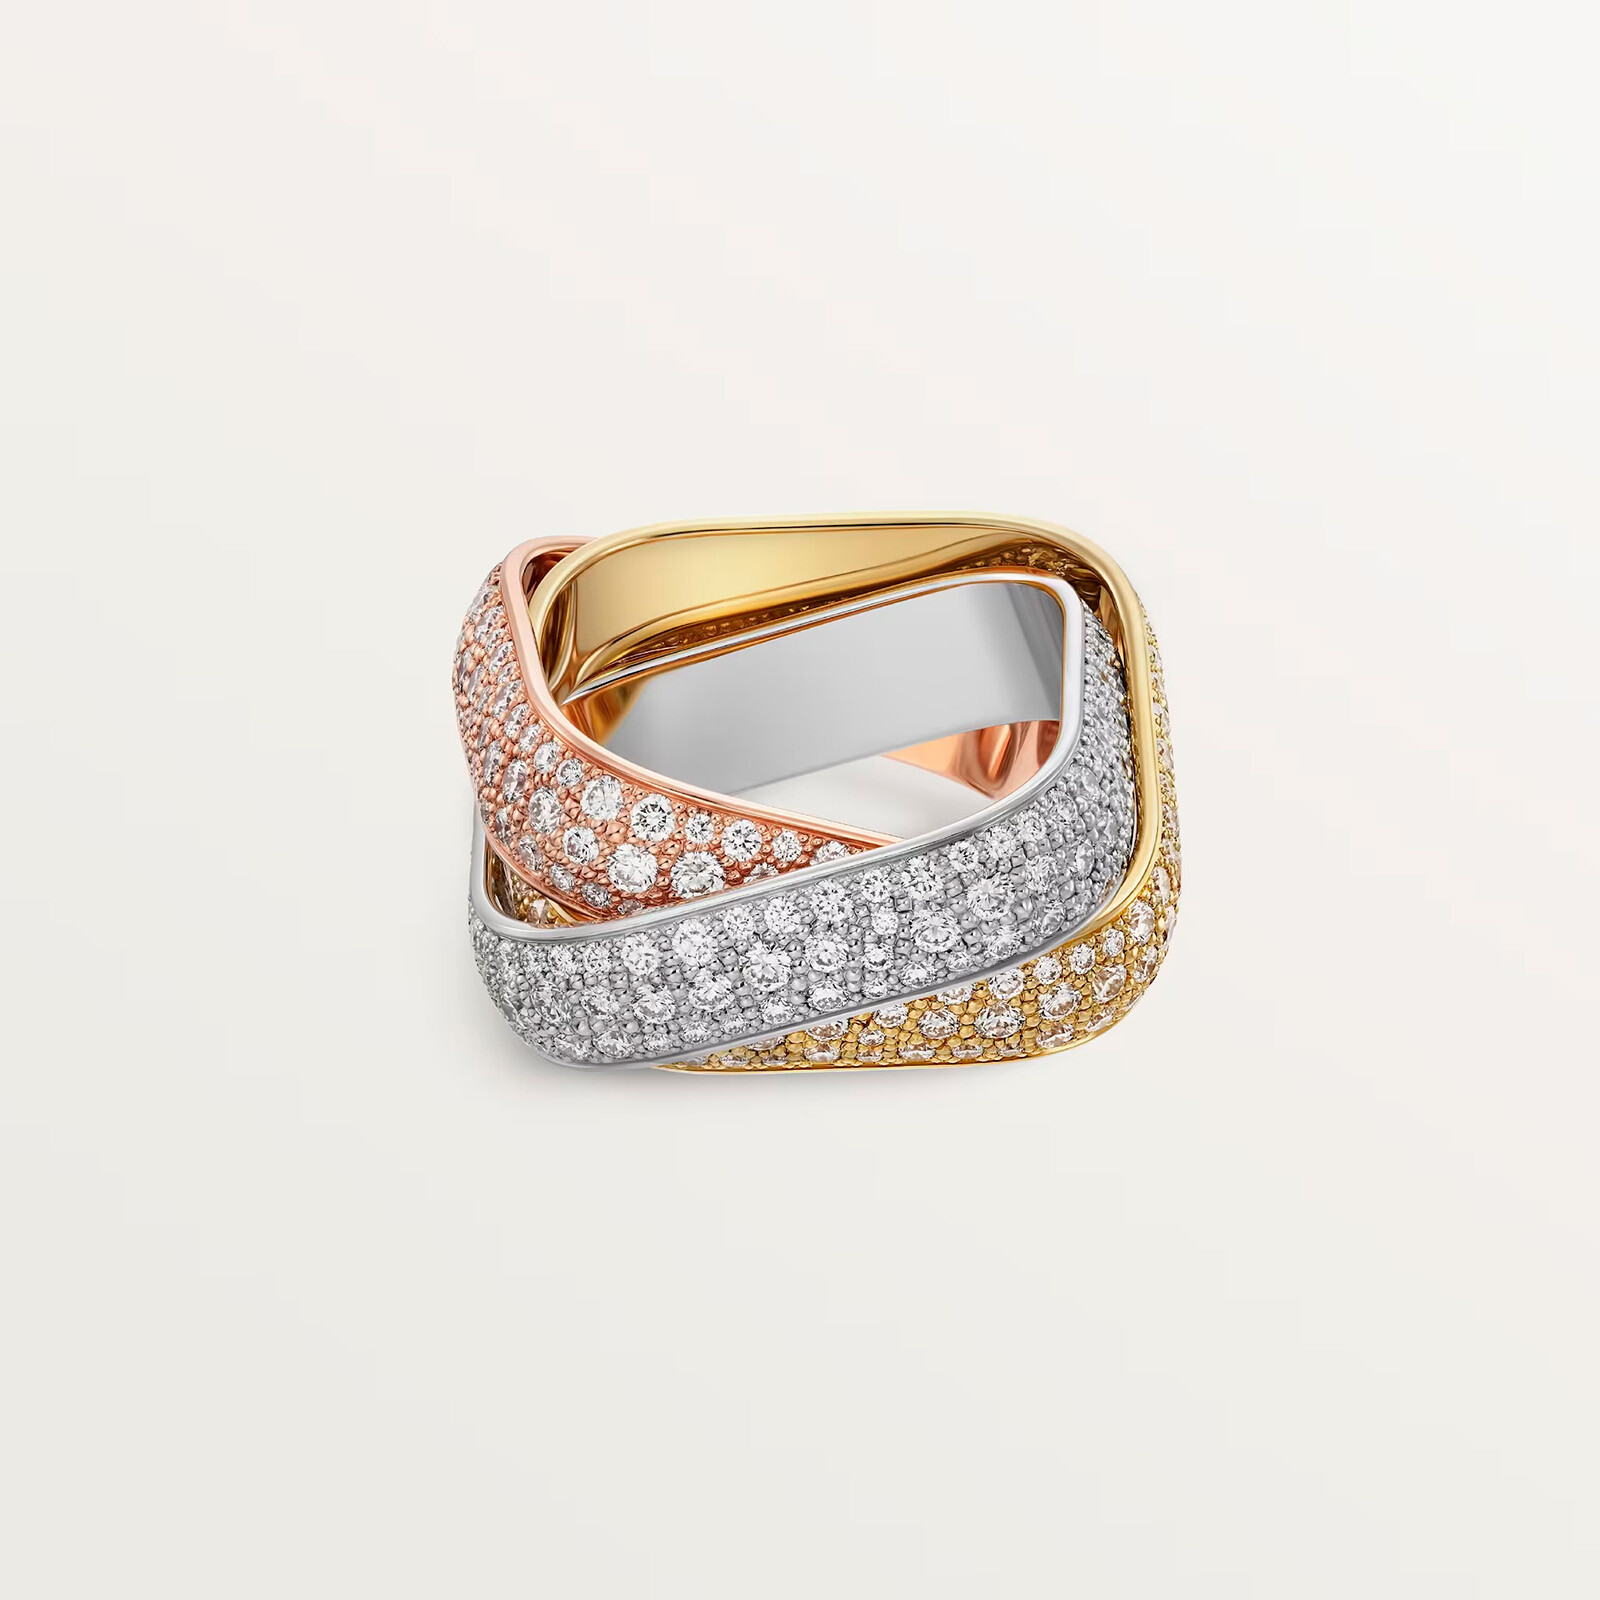 Cartier новые кольца Trinity по случаю 100-летия линейки